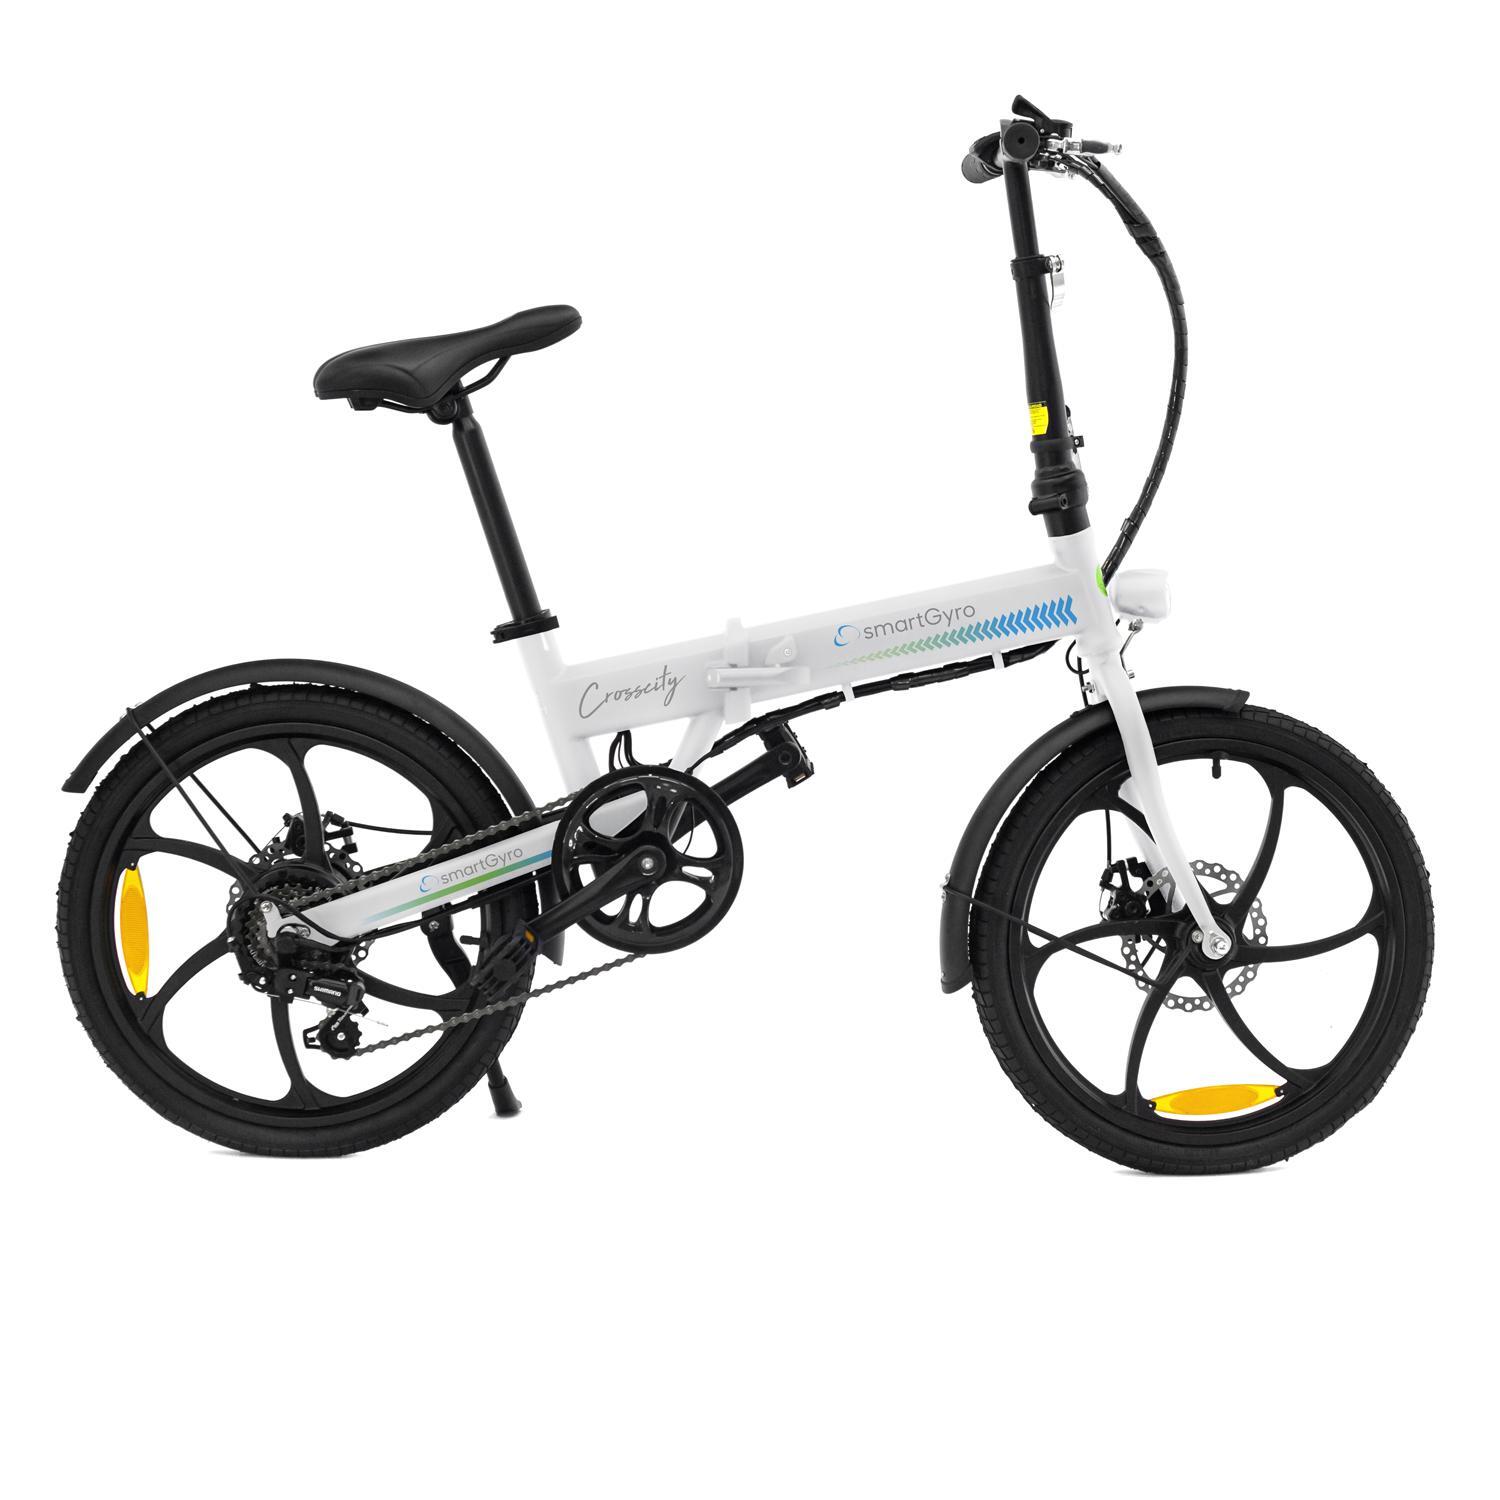 Bicicleta Smartgyro Crosscity - Blanco - Bici Urbana talla T.U.